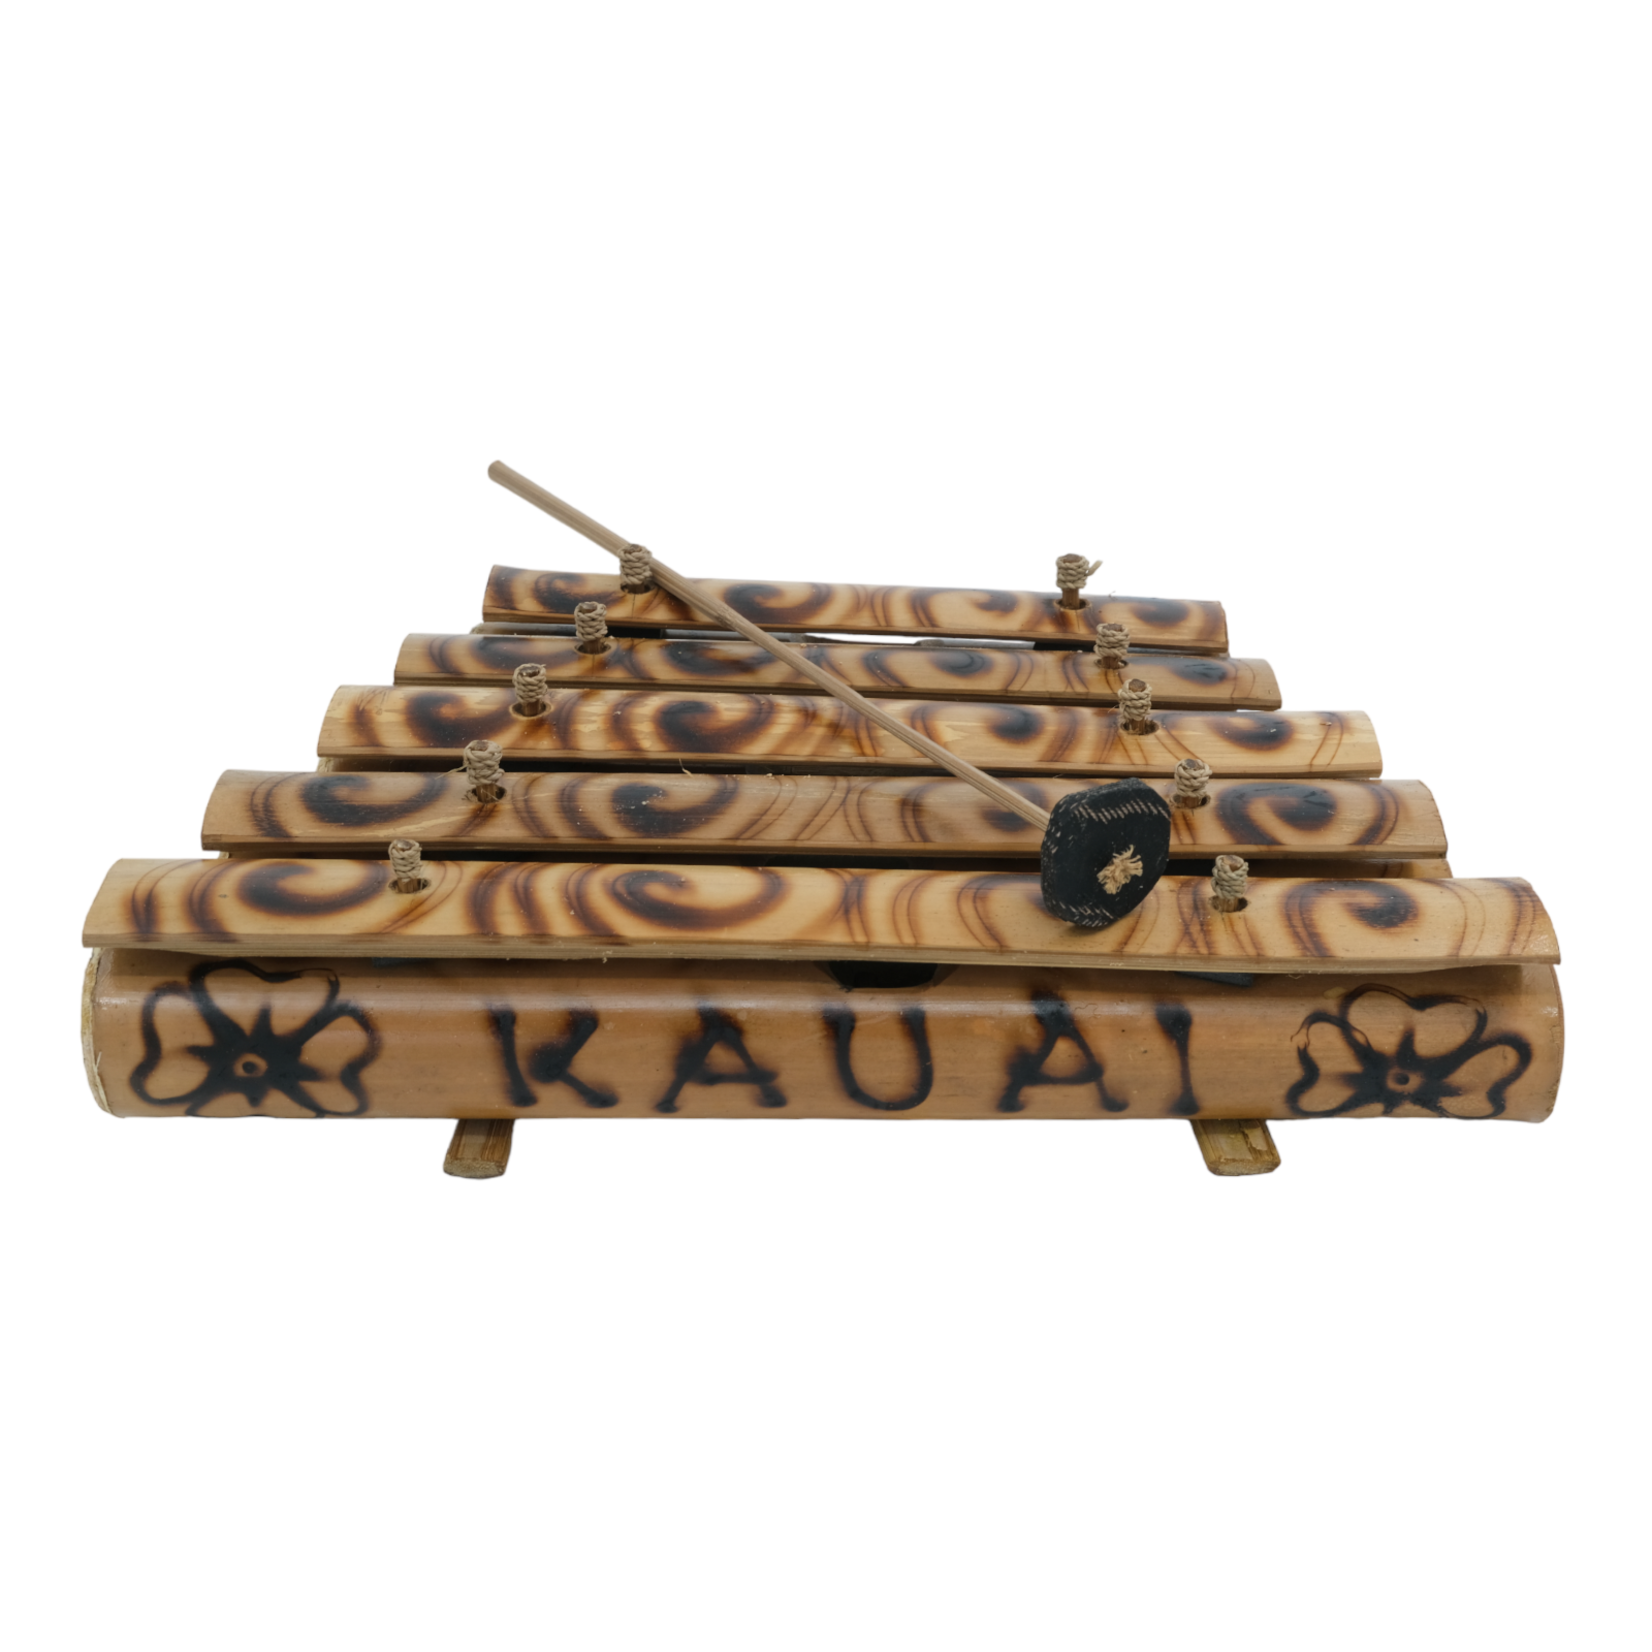 Hand Made Bamboo Tingklik Xylophone Medium Kauai